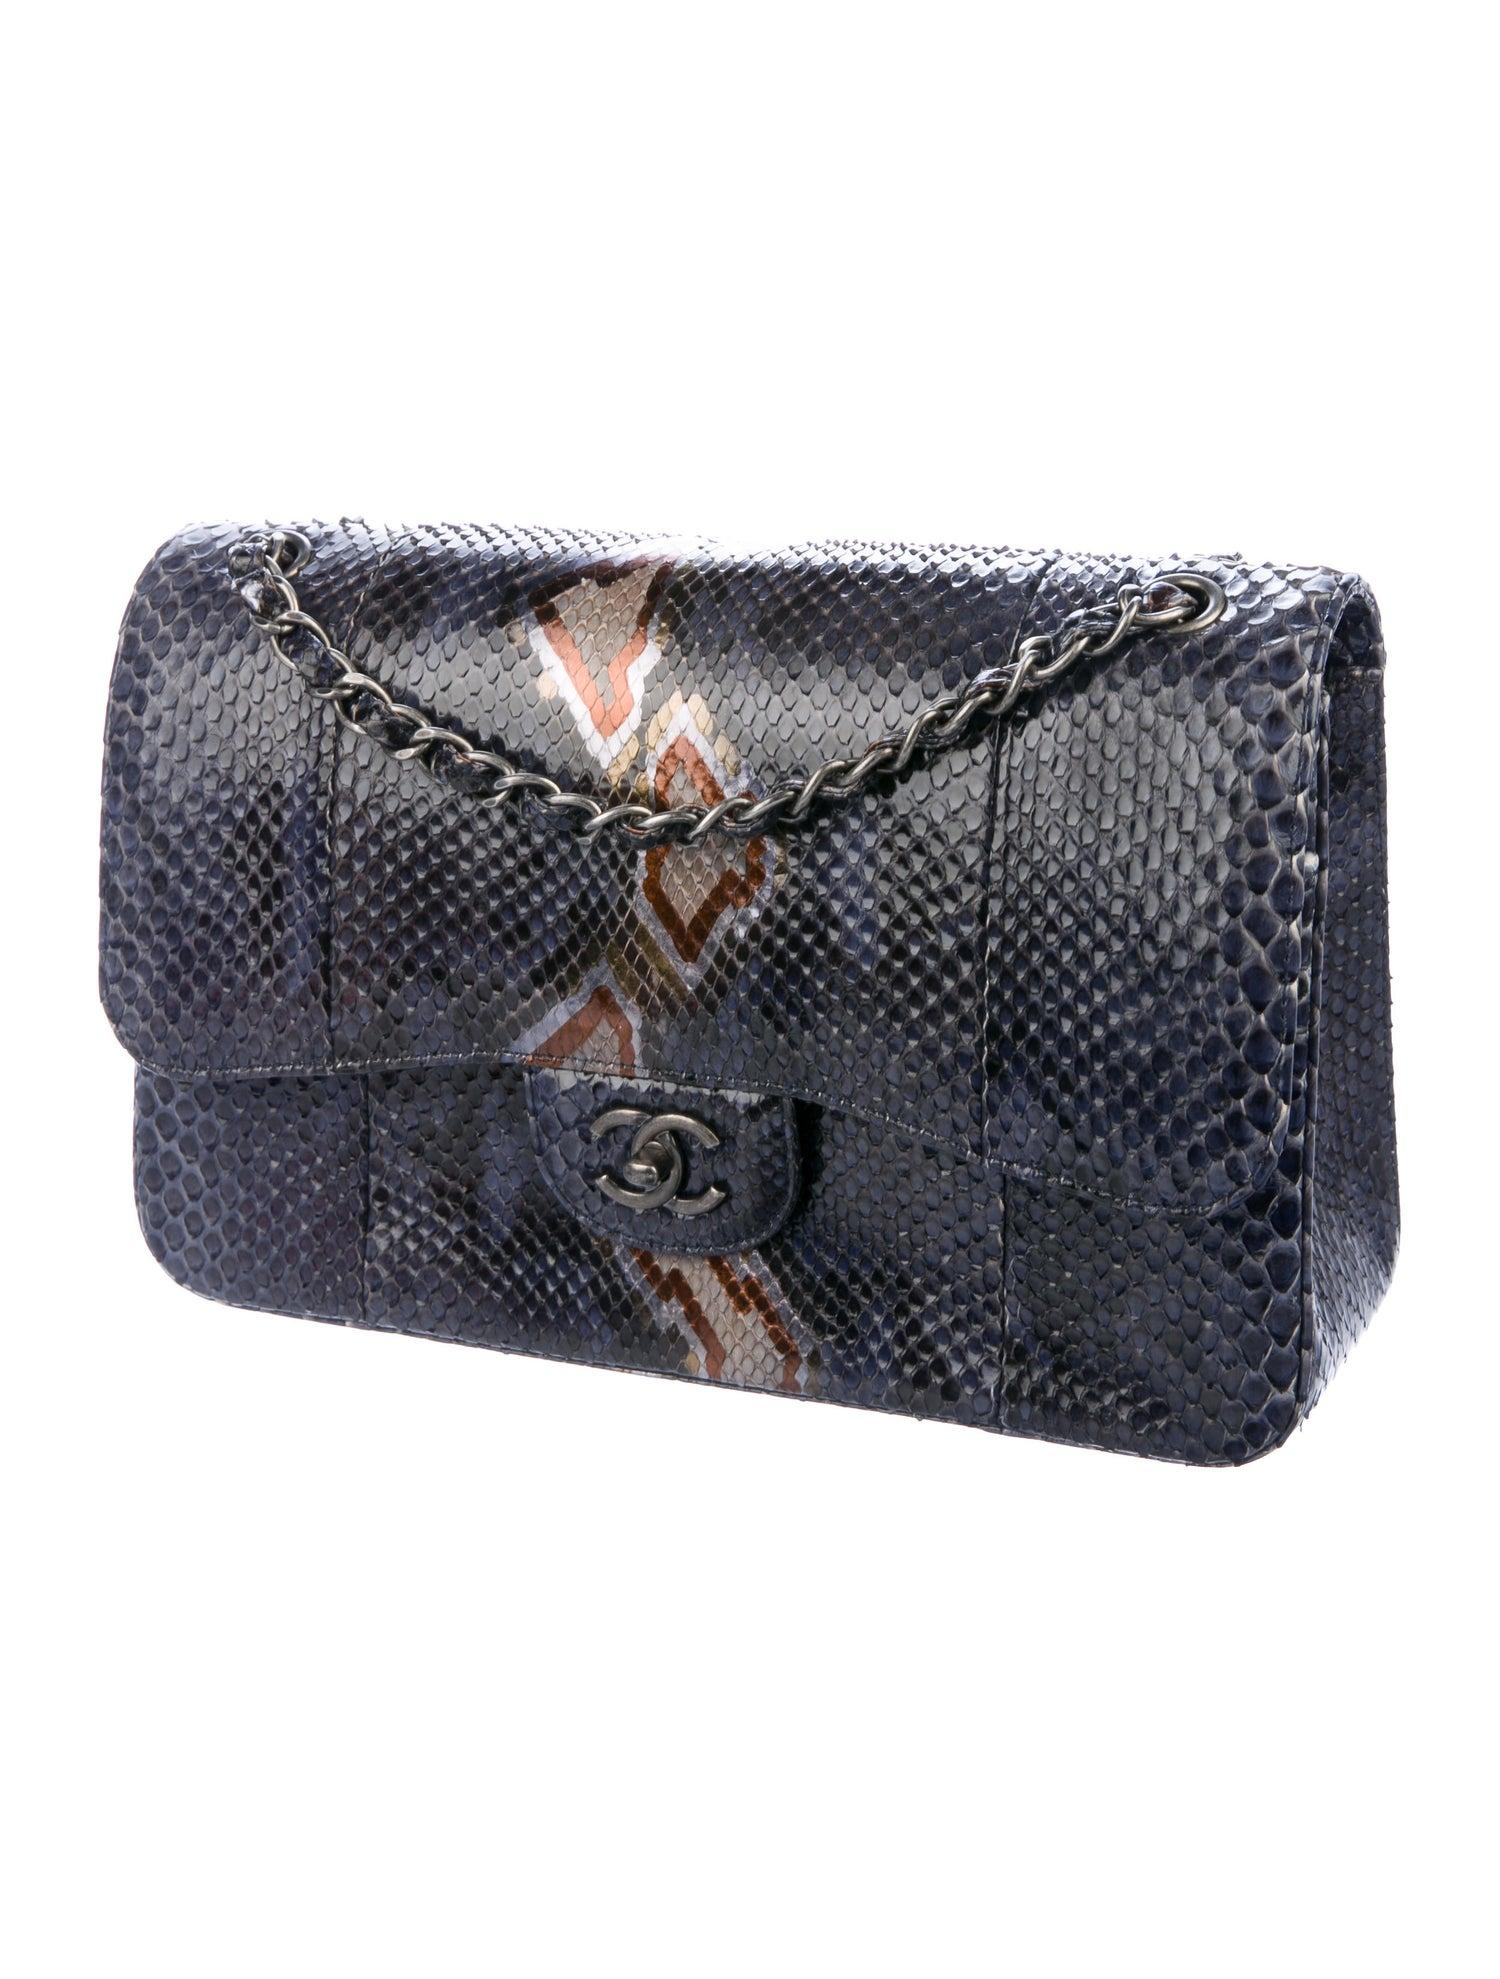 Black Chanel Blue Snakeskin Exotic Leather Large Evening Shoulder Flap Bag